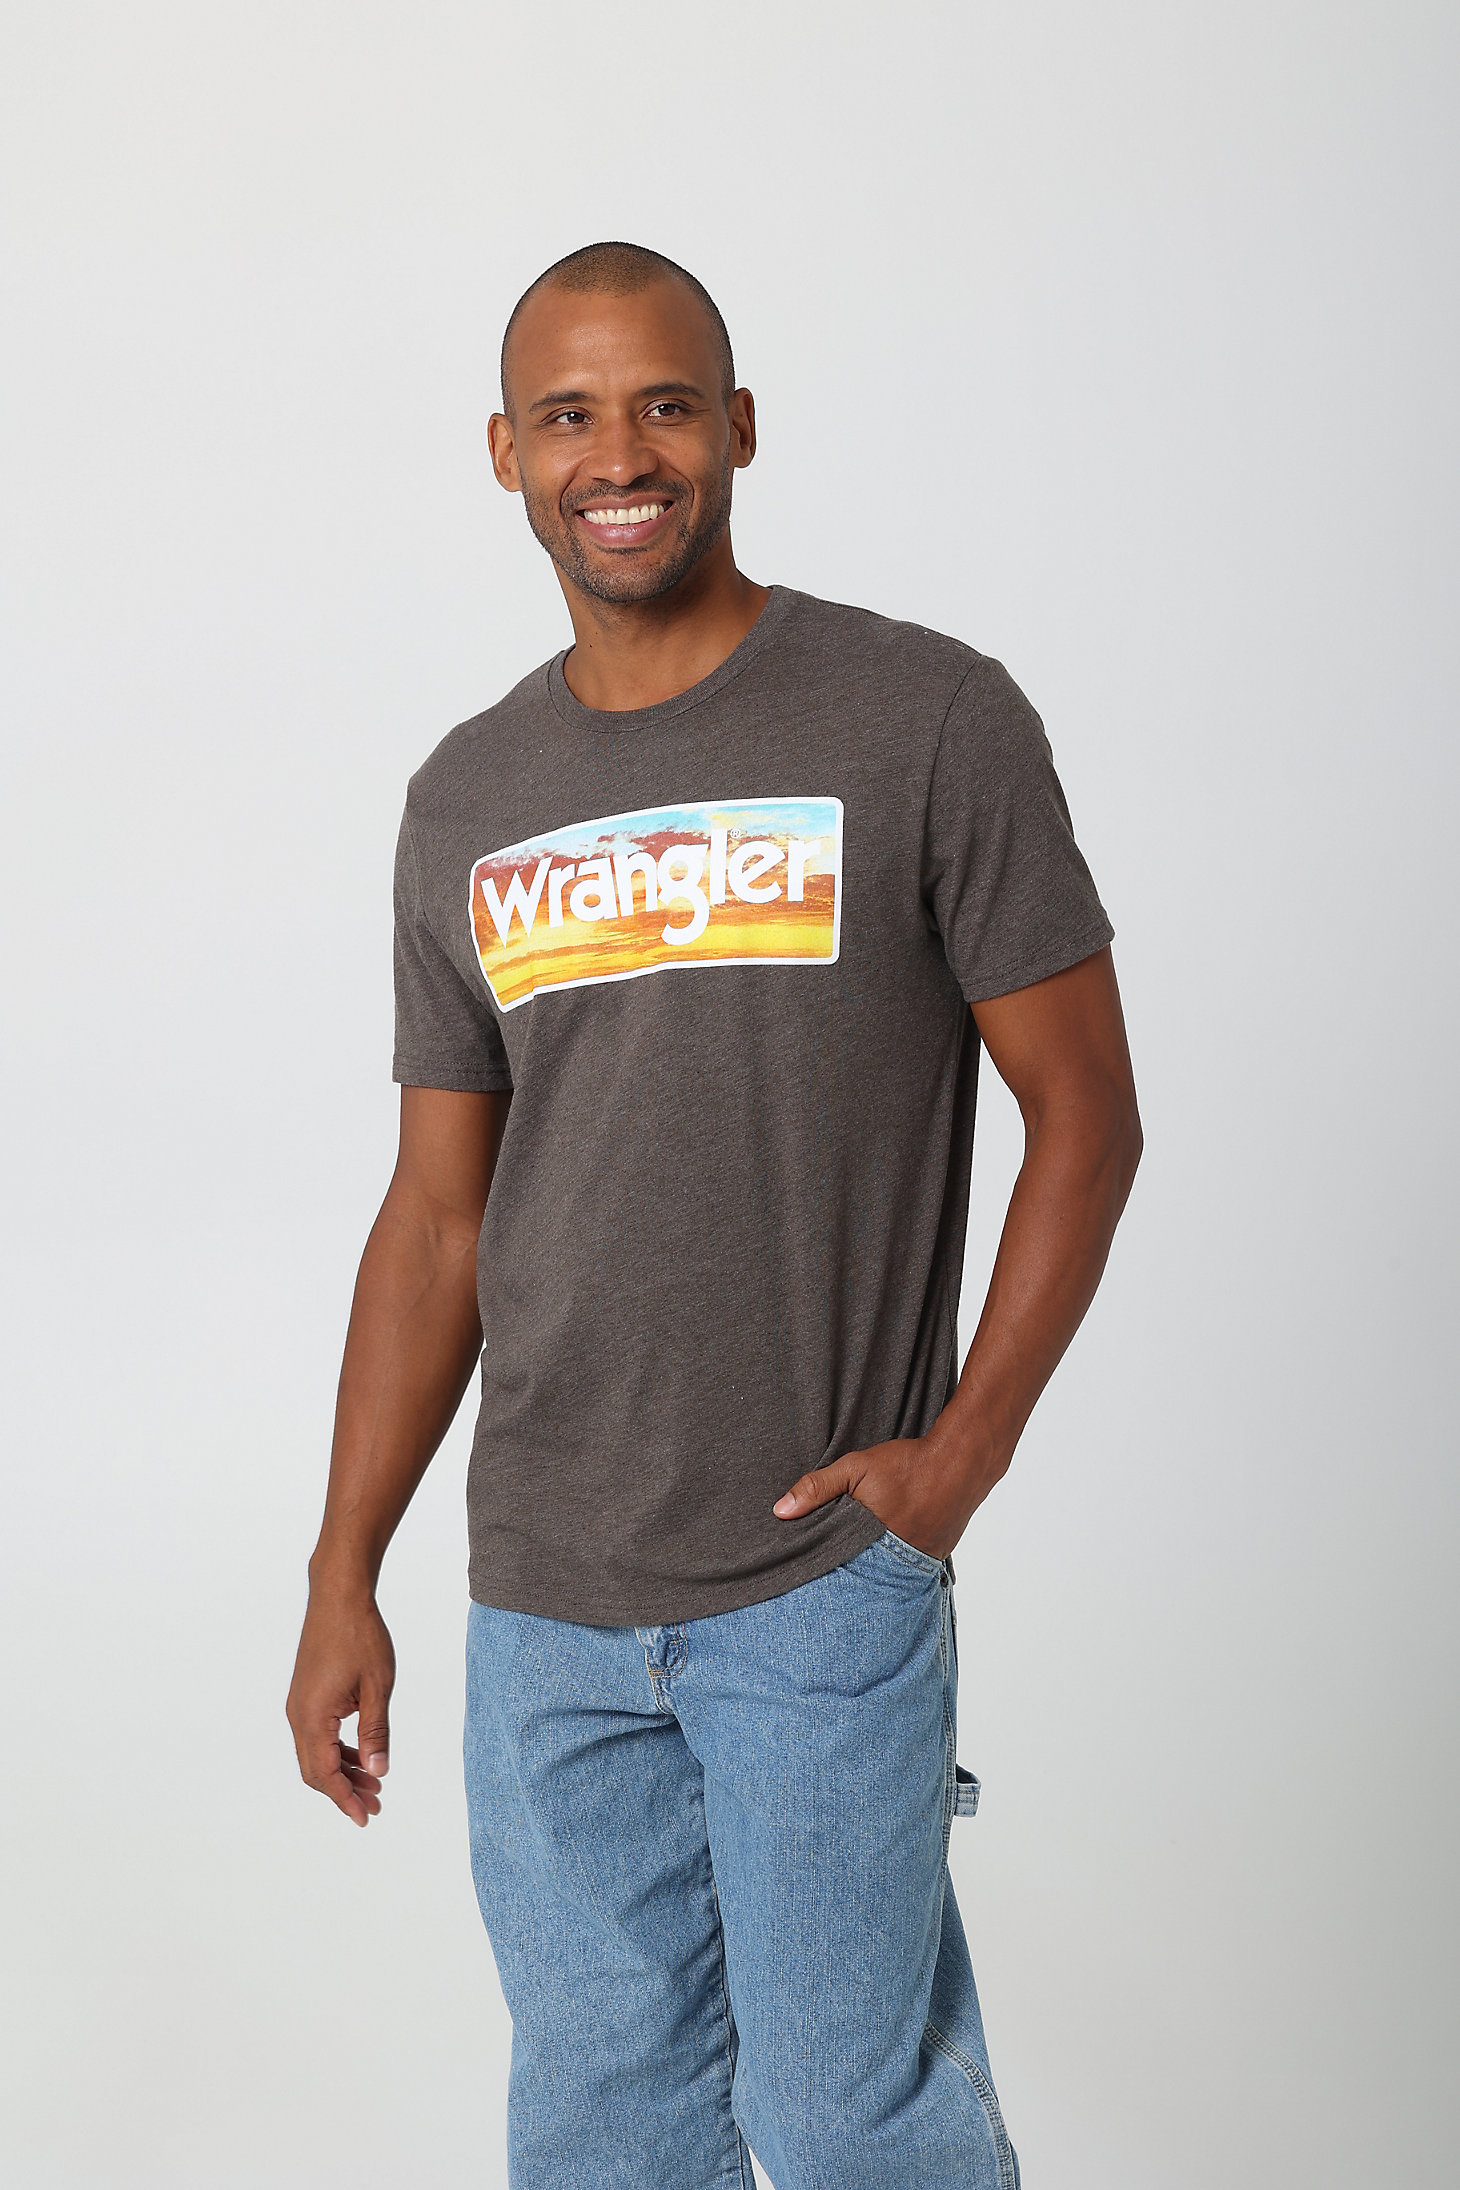 Men's Wrangler Sunrise Logo T-Shirt in Brown Heather alternative view 1